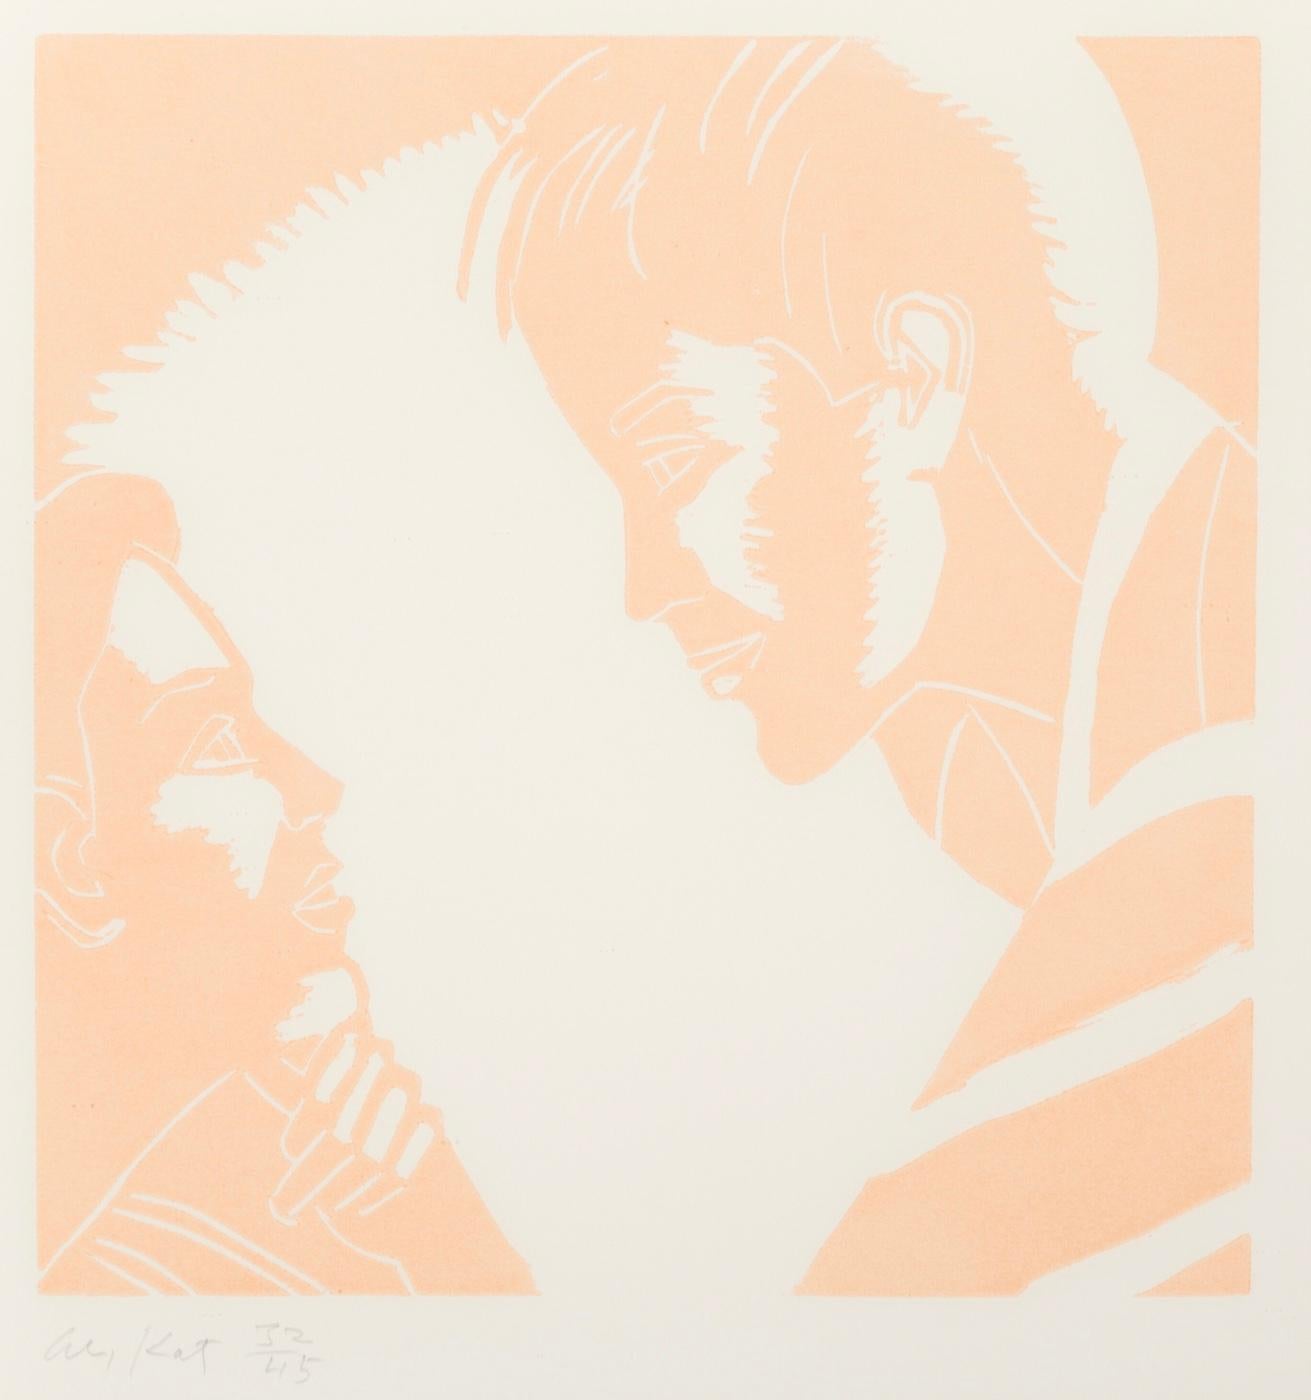 ALEX KATZ (1927-Gegenwart)

Dieses unbetitelte Werk von Alex Katz aus der Serie "A Tremor in the Morning" ist ein Holzschnitt-Reliefdruck in Farbe auf Velinpapier. Dieser Druck hat die Auflage 32/45 und ist unten links in Graphit signiert. Dieses